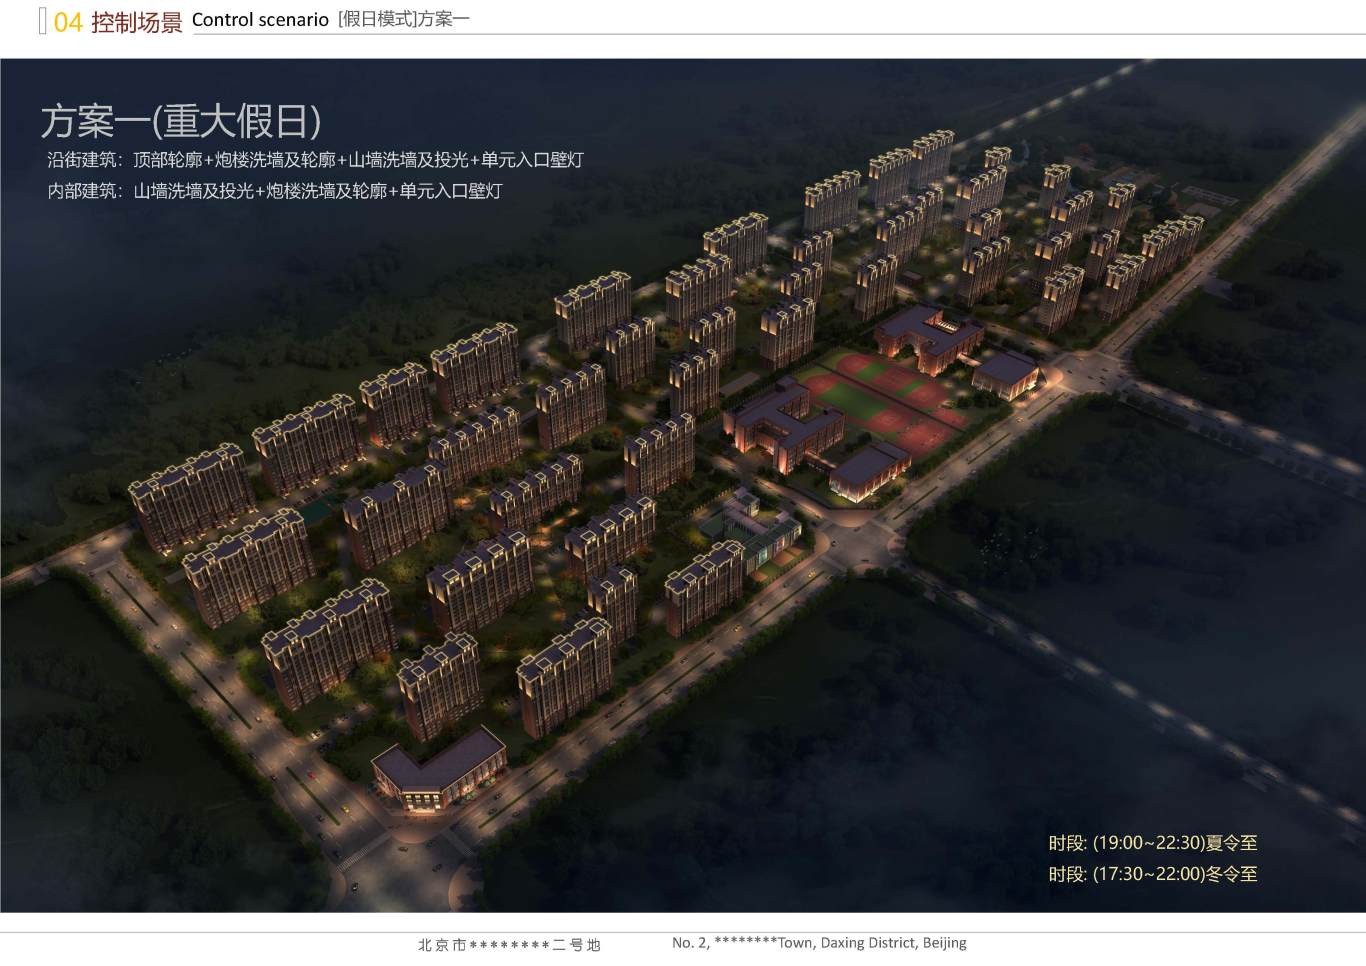 北京市大興區*****二號地夜景照明項目案例圖38